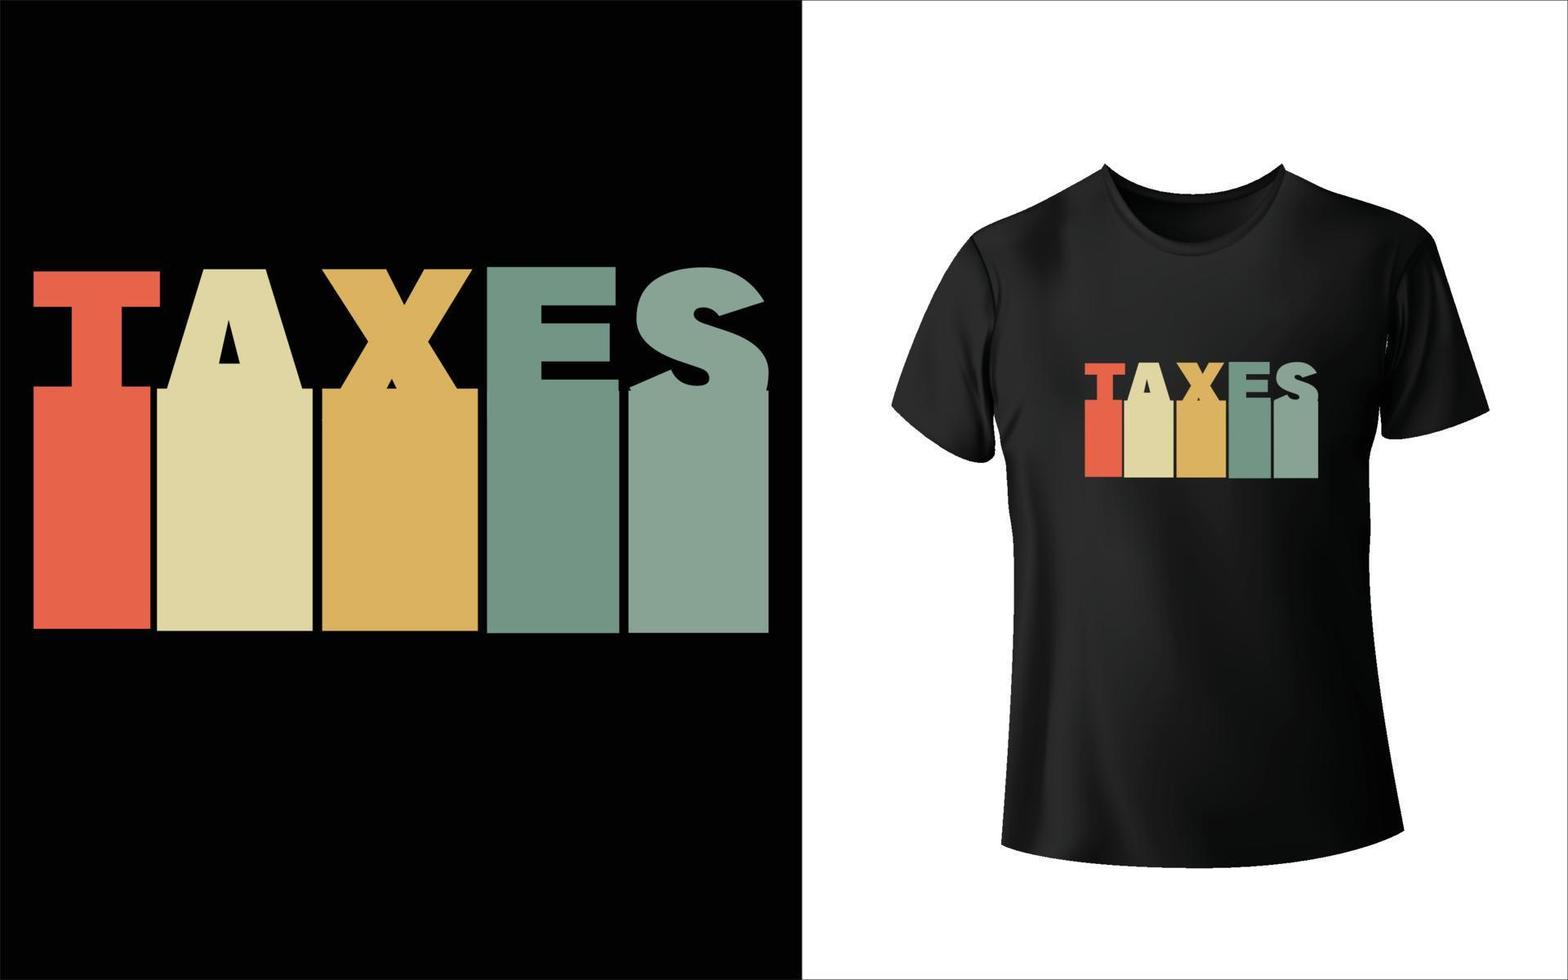 Taxes t shirt design vector